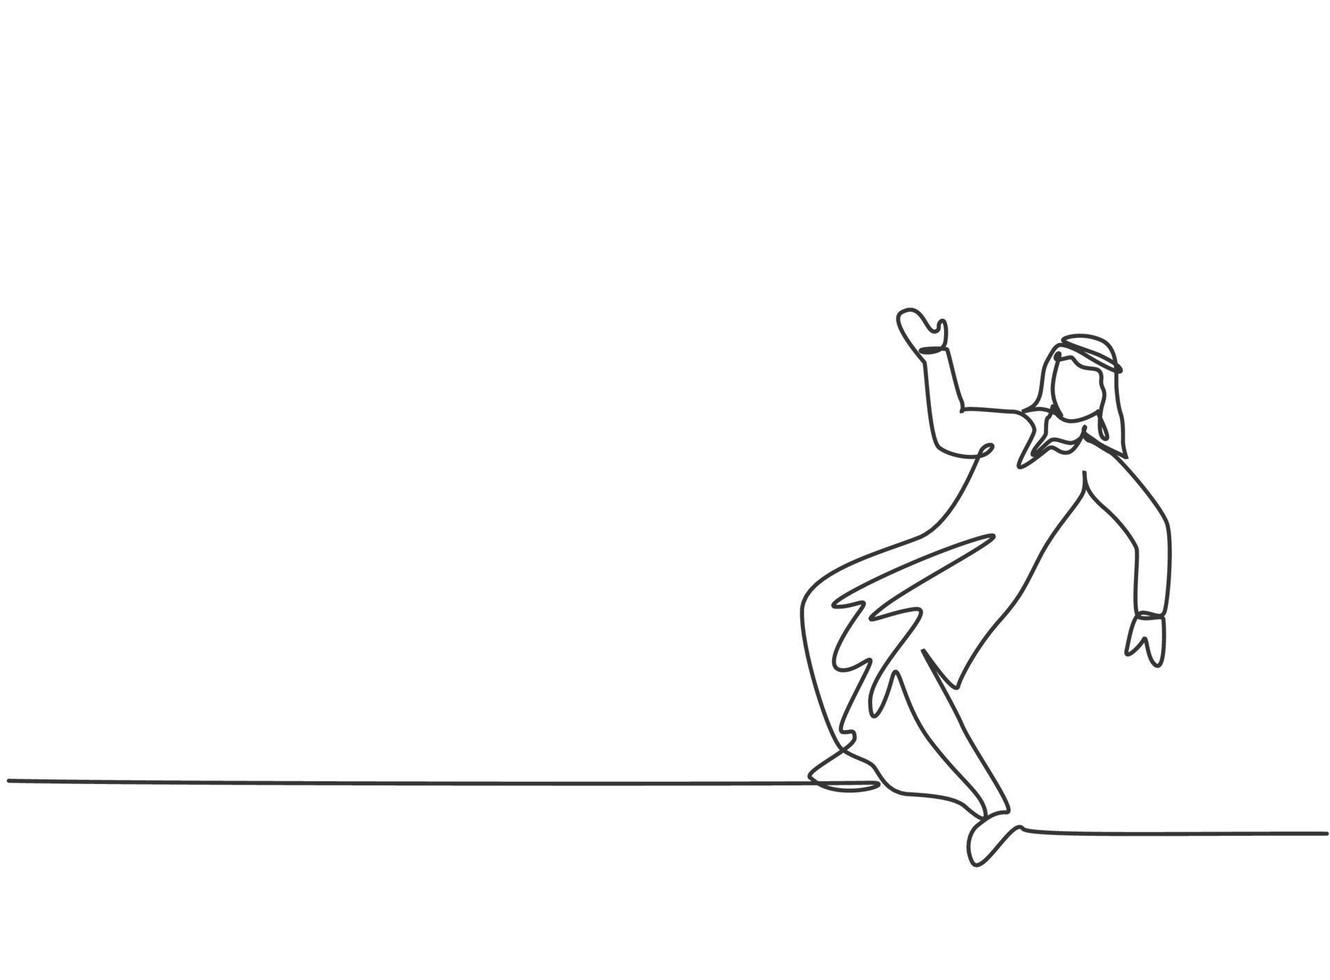 único desenho de linha de homem de negócios árabe jovem dançando na rua. feliz com seu conceito de metáfora mínima de desafio de negócios. linha contínua moderna desenhar design gráfico ilustração vetorial vetor